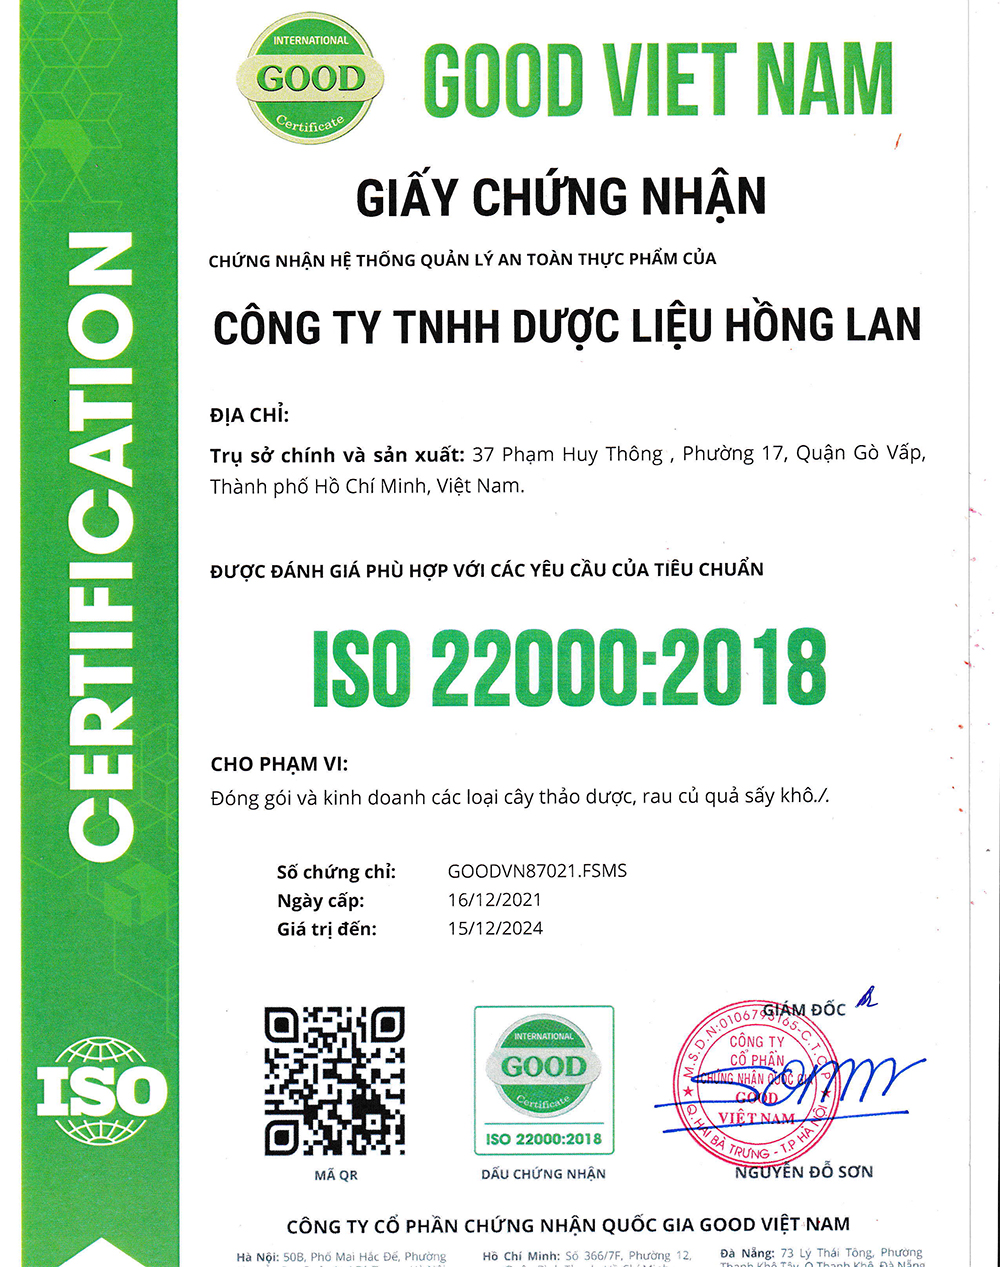 Trà túi lọc Cây Lá Vối được sản xuất bởi Công ty TNHH Dược Liệu Hồng Lan theo hệ thống quản lý an toàn thực phẩm ISO 22000:2018 được cấp bởi công ty cổ phần chứng nhận Quốc Gia Good Việt Nam (Good Viet Nam Certification Joint Stock Company)